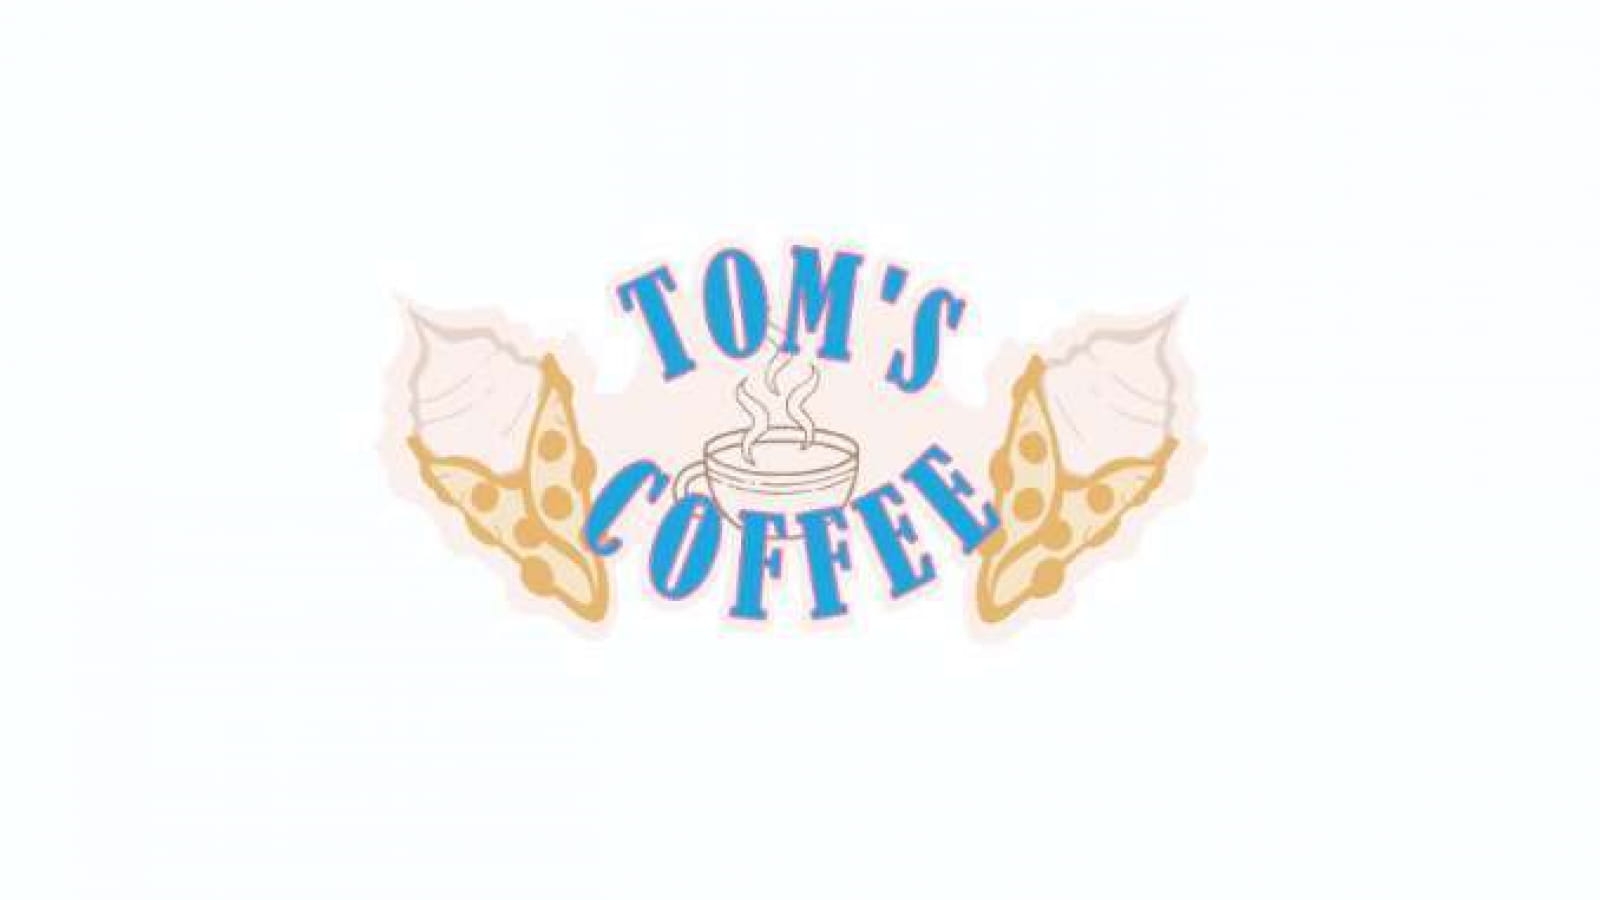 Tom's Coffee